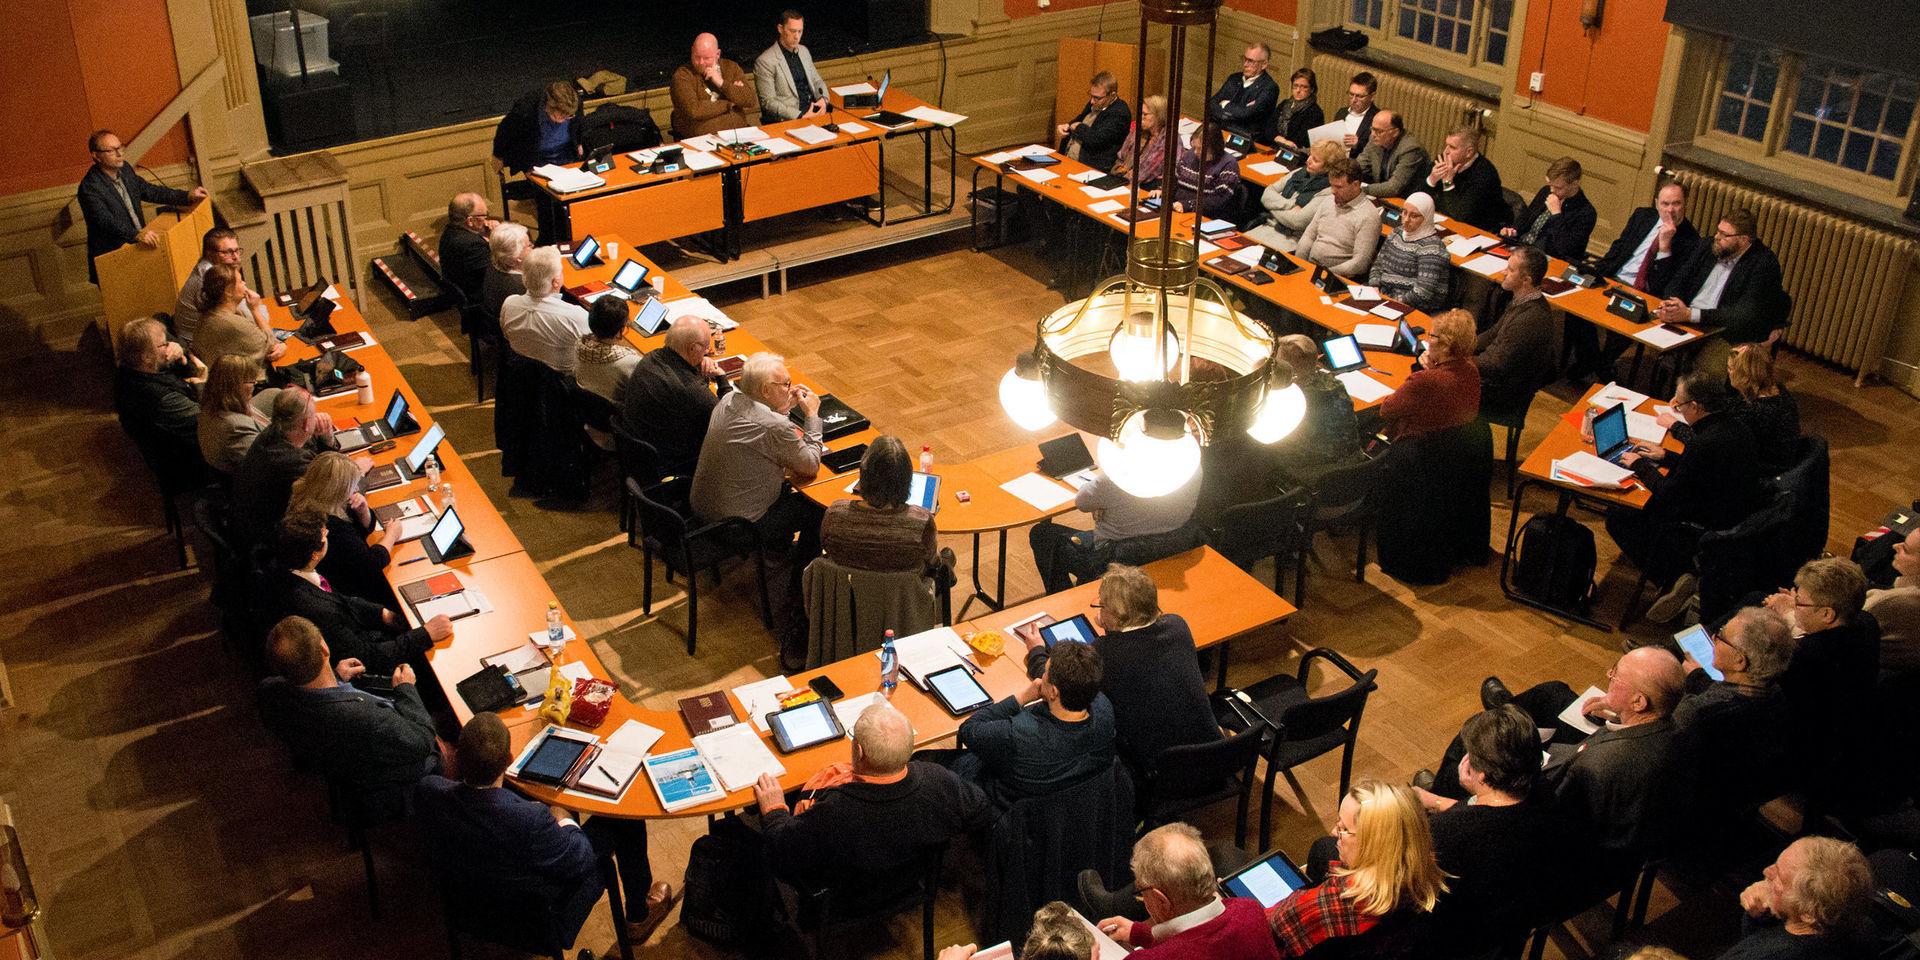 Laholms kommunfullmäktige består av 41 ledamöter fördelat på 11 partier.